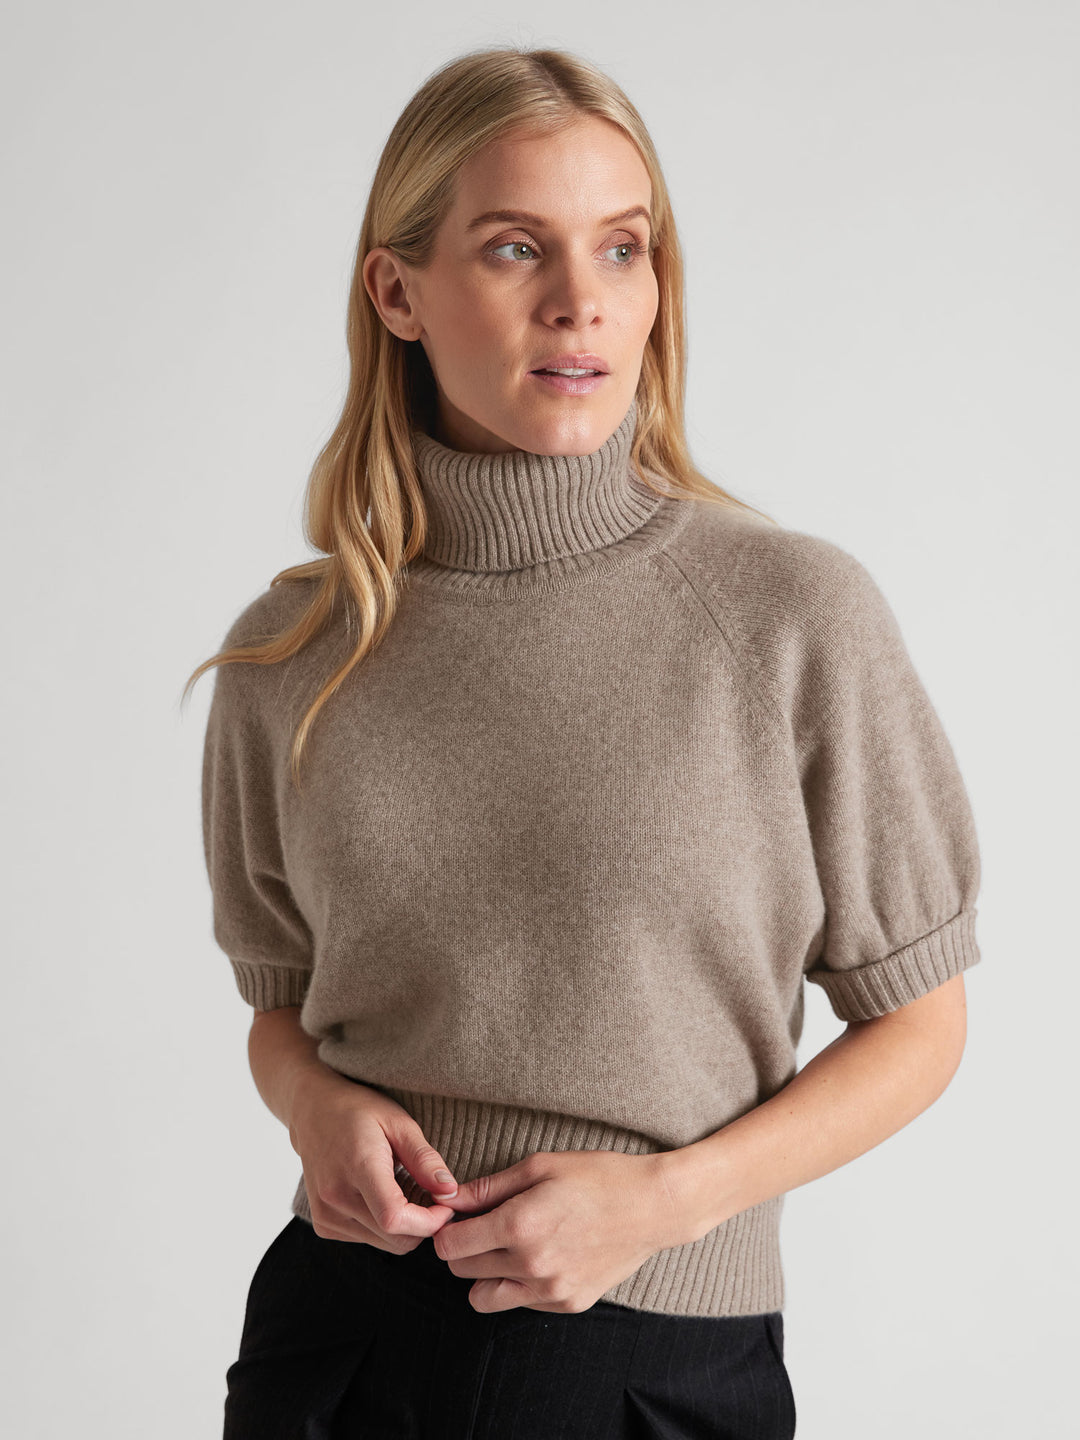 Short sleeved turtle neck cashmere sweater. Color Toast. Scandinavian design by Kashmina